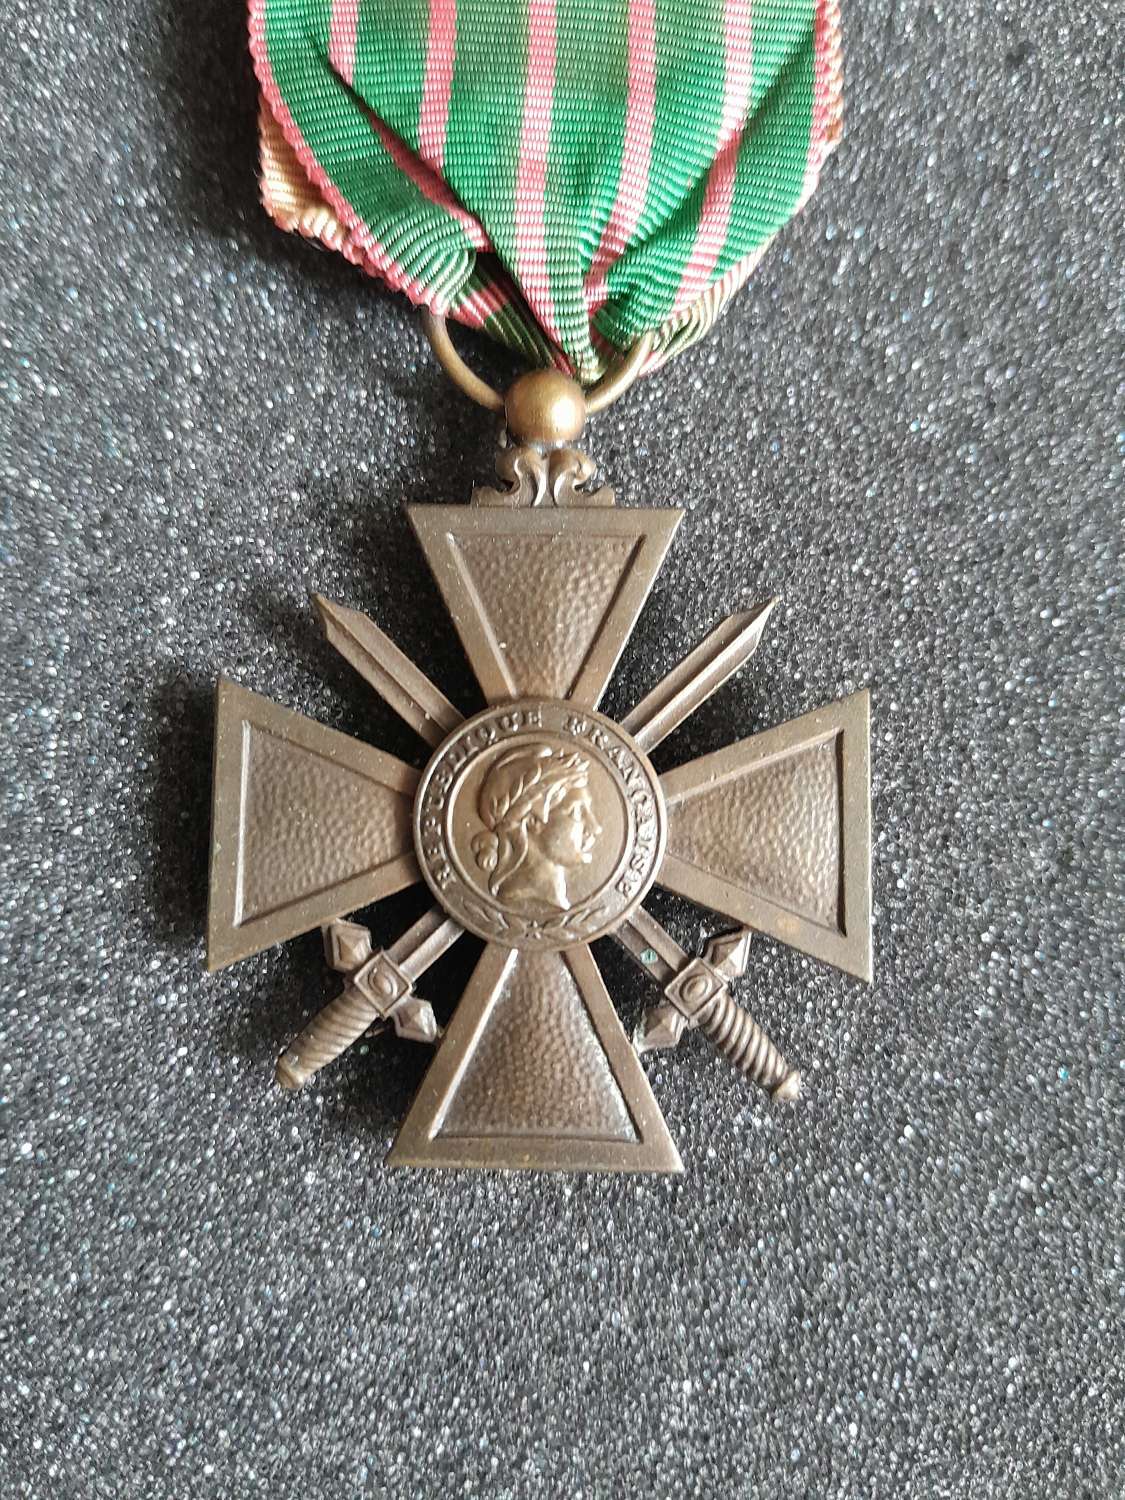 French Croix de Guerre 1914 - 1918